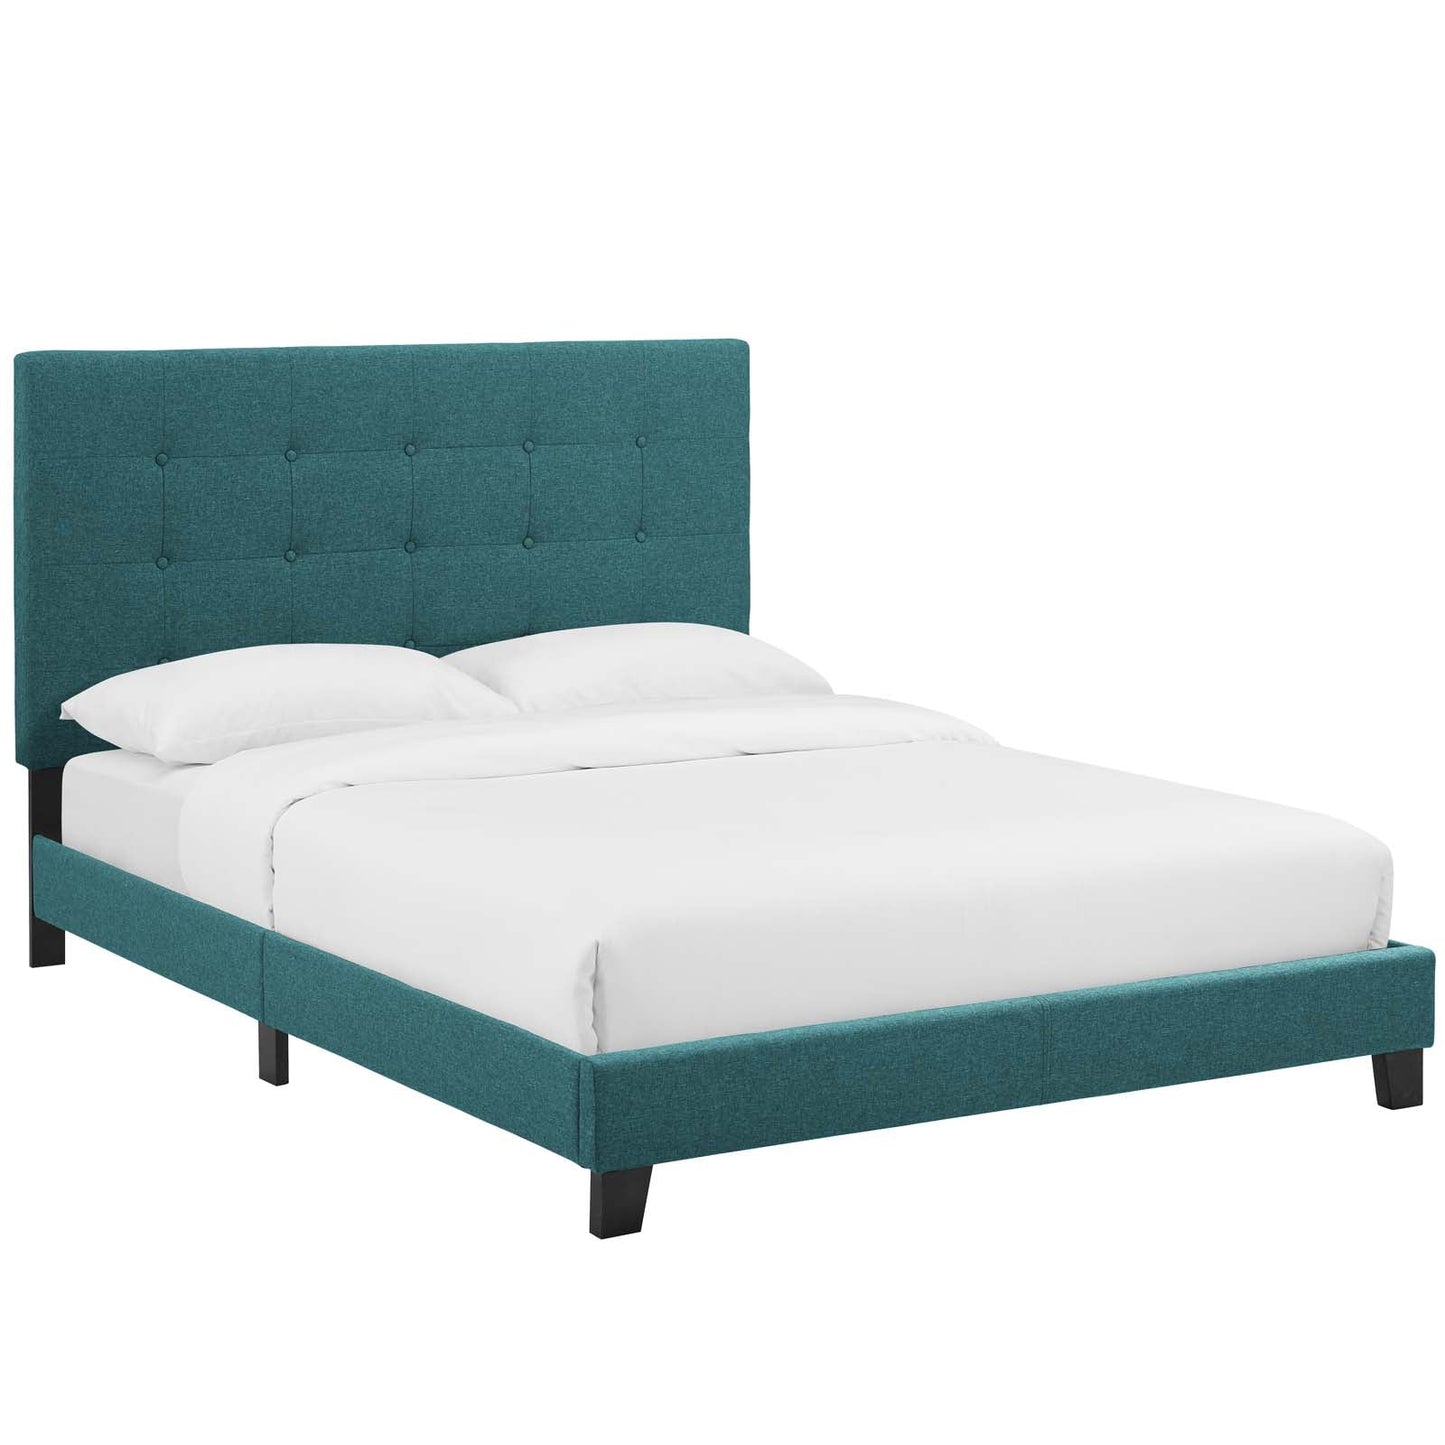 Modway Beds & Bed Frames King / Teal Melanie Tufted Button Upholstered Fabric Platform Bed MOD-5994-TEA